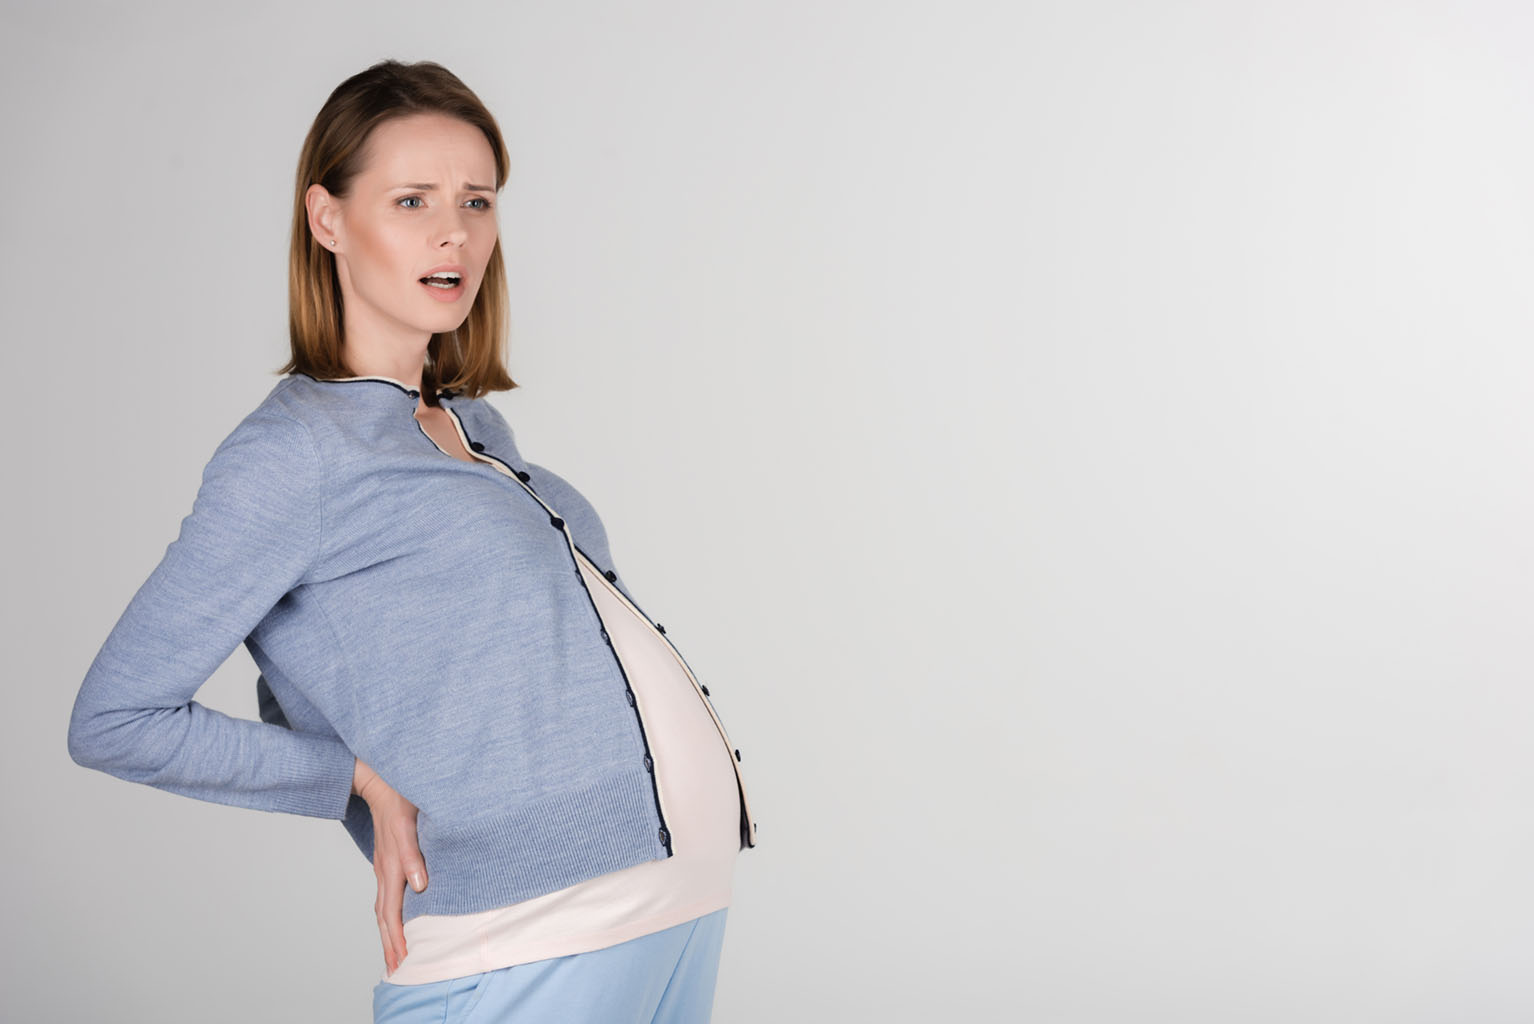 Jordemoderens 5 tips til at gå i fødsel